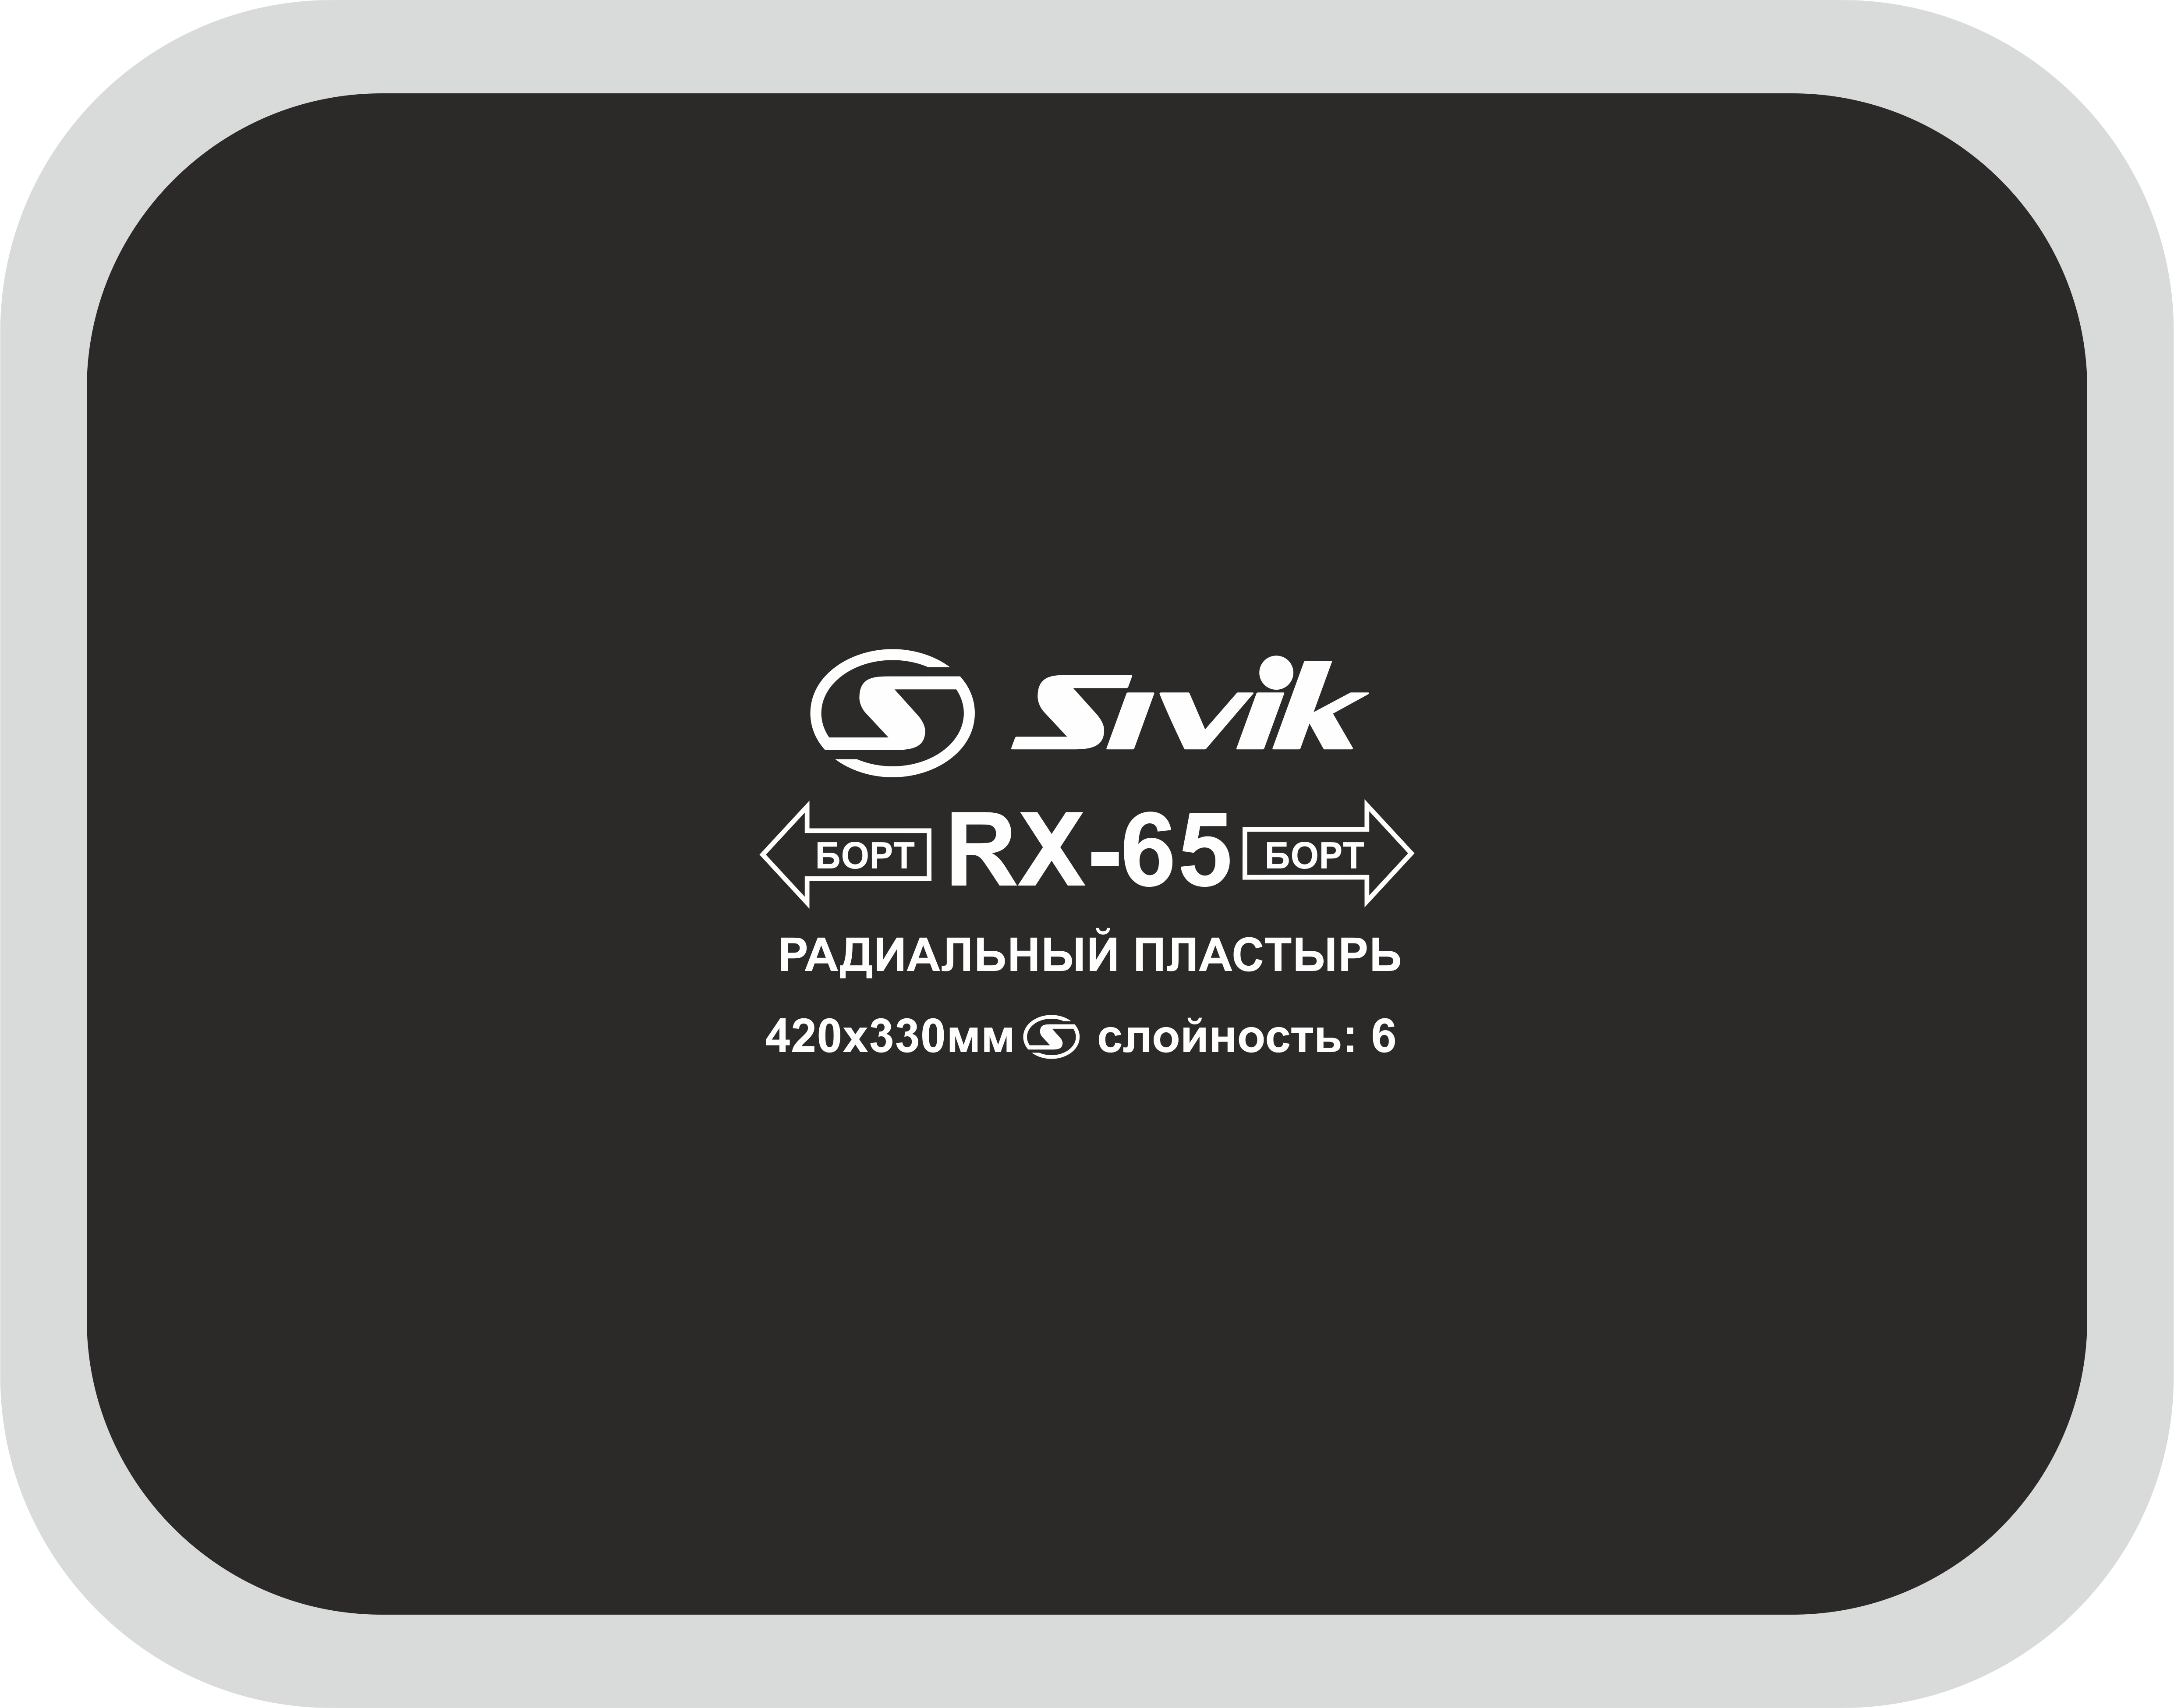 Пластырь радиальный RX-65